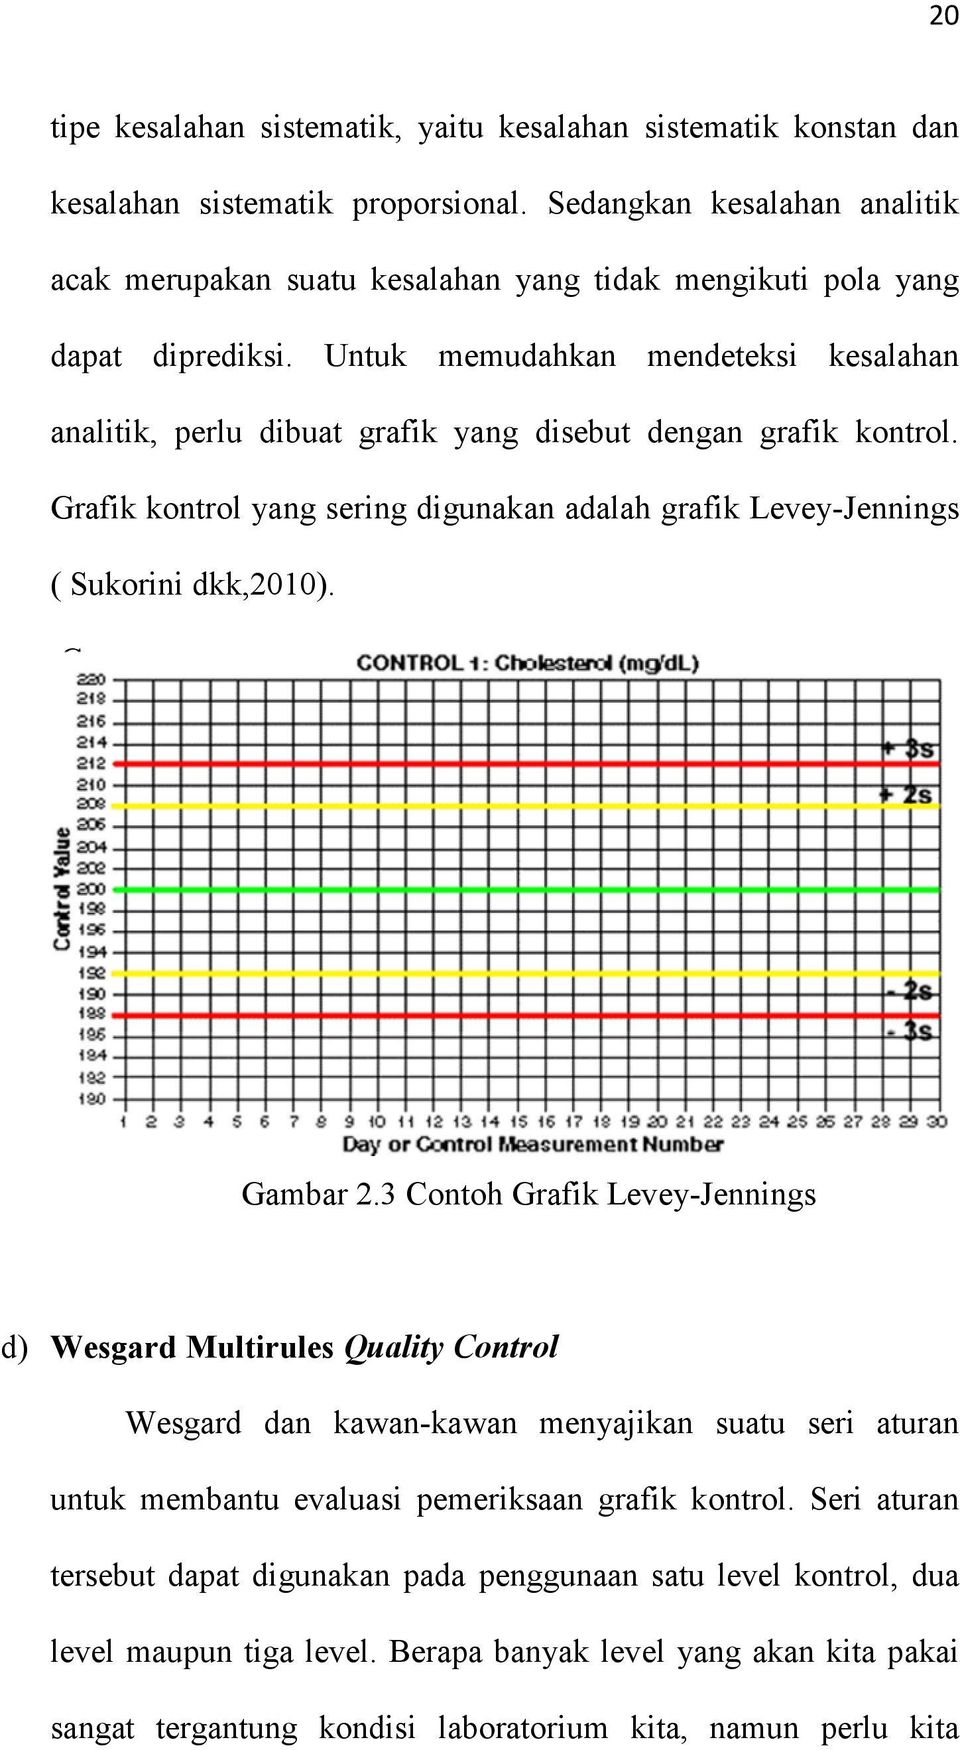 Untuk memudahkan mendeteksi kesalahan analitik, perlu dibuat grafik yang disebut dengan grafik kontrol. Grafik kontrol yang sering digunakan adalah grafik Levey-Jennings ( Sukorini dkk,2010).